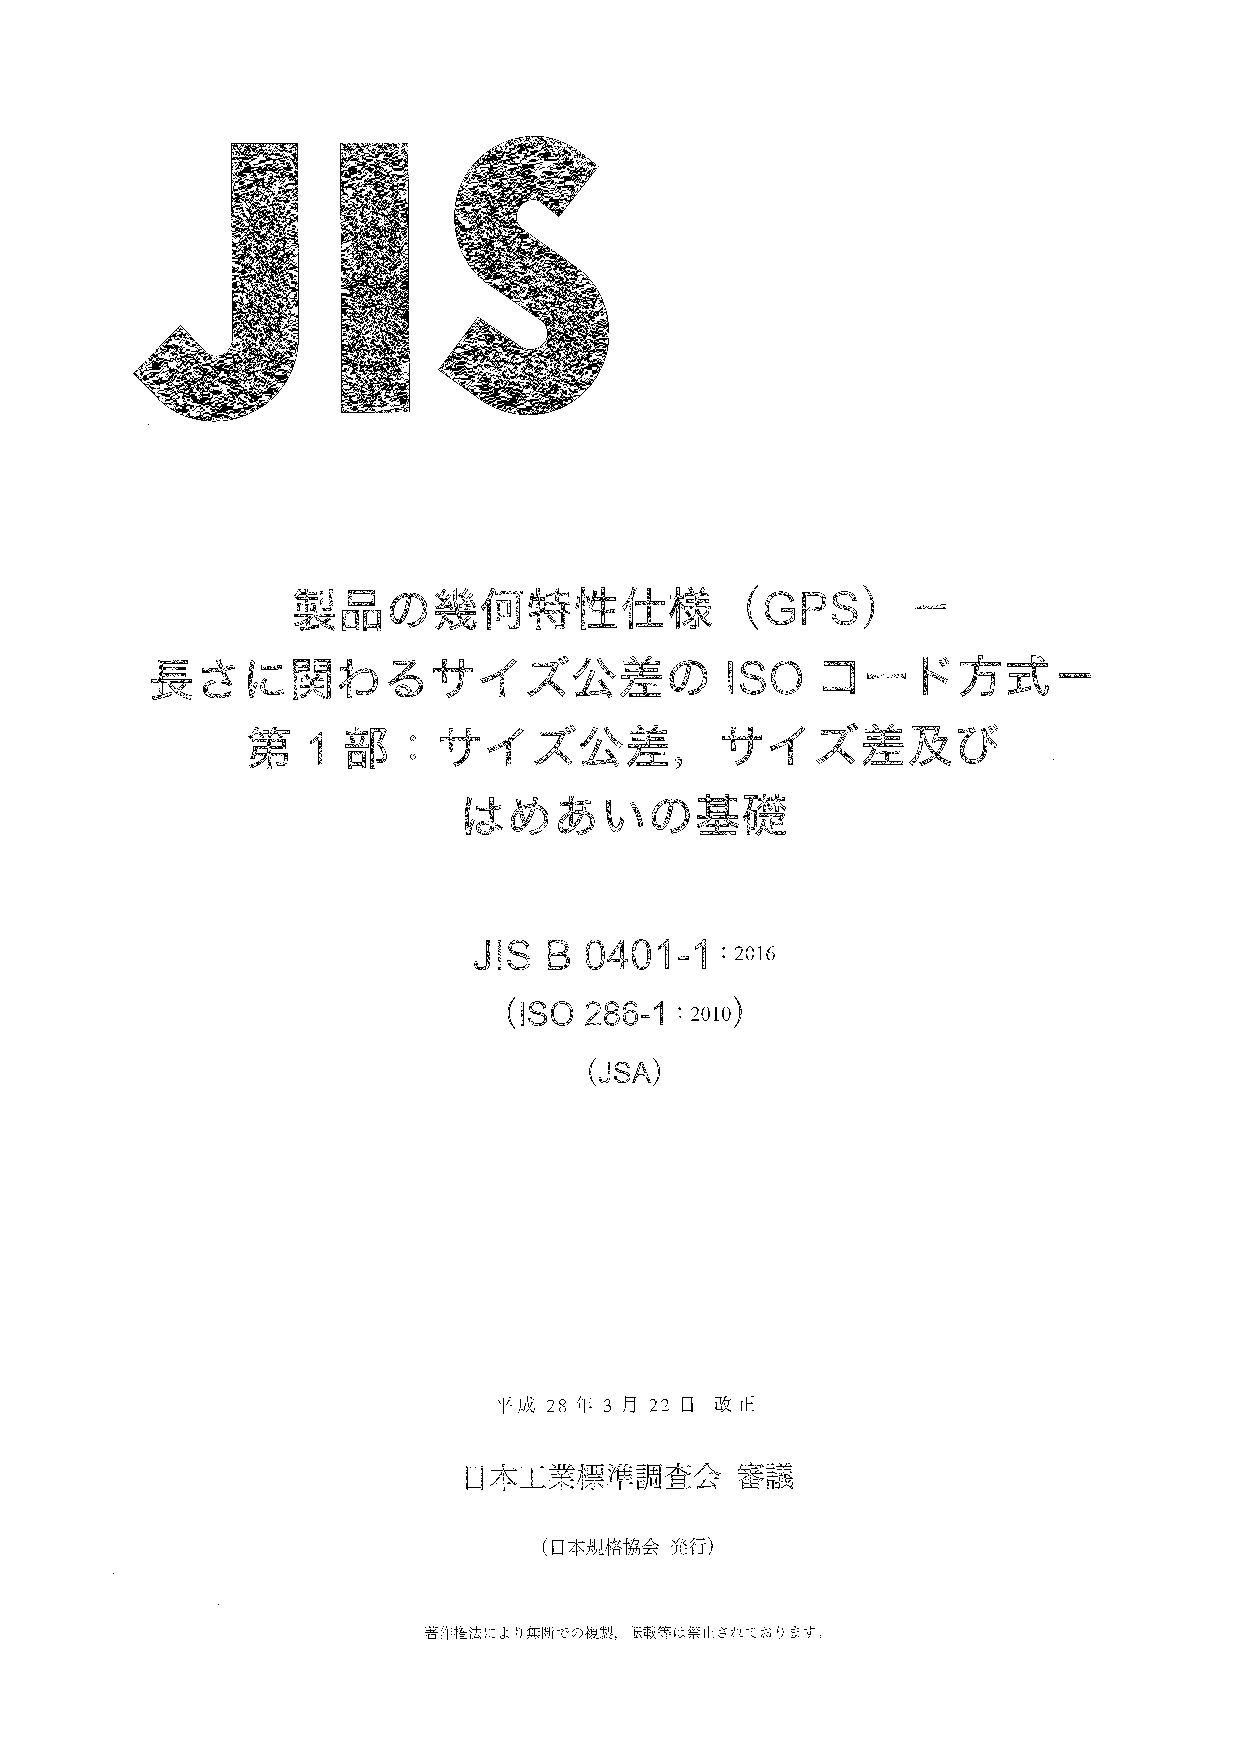 JIS B 0401-1:2016封面图